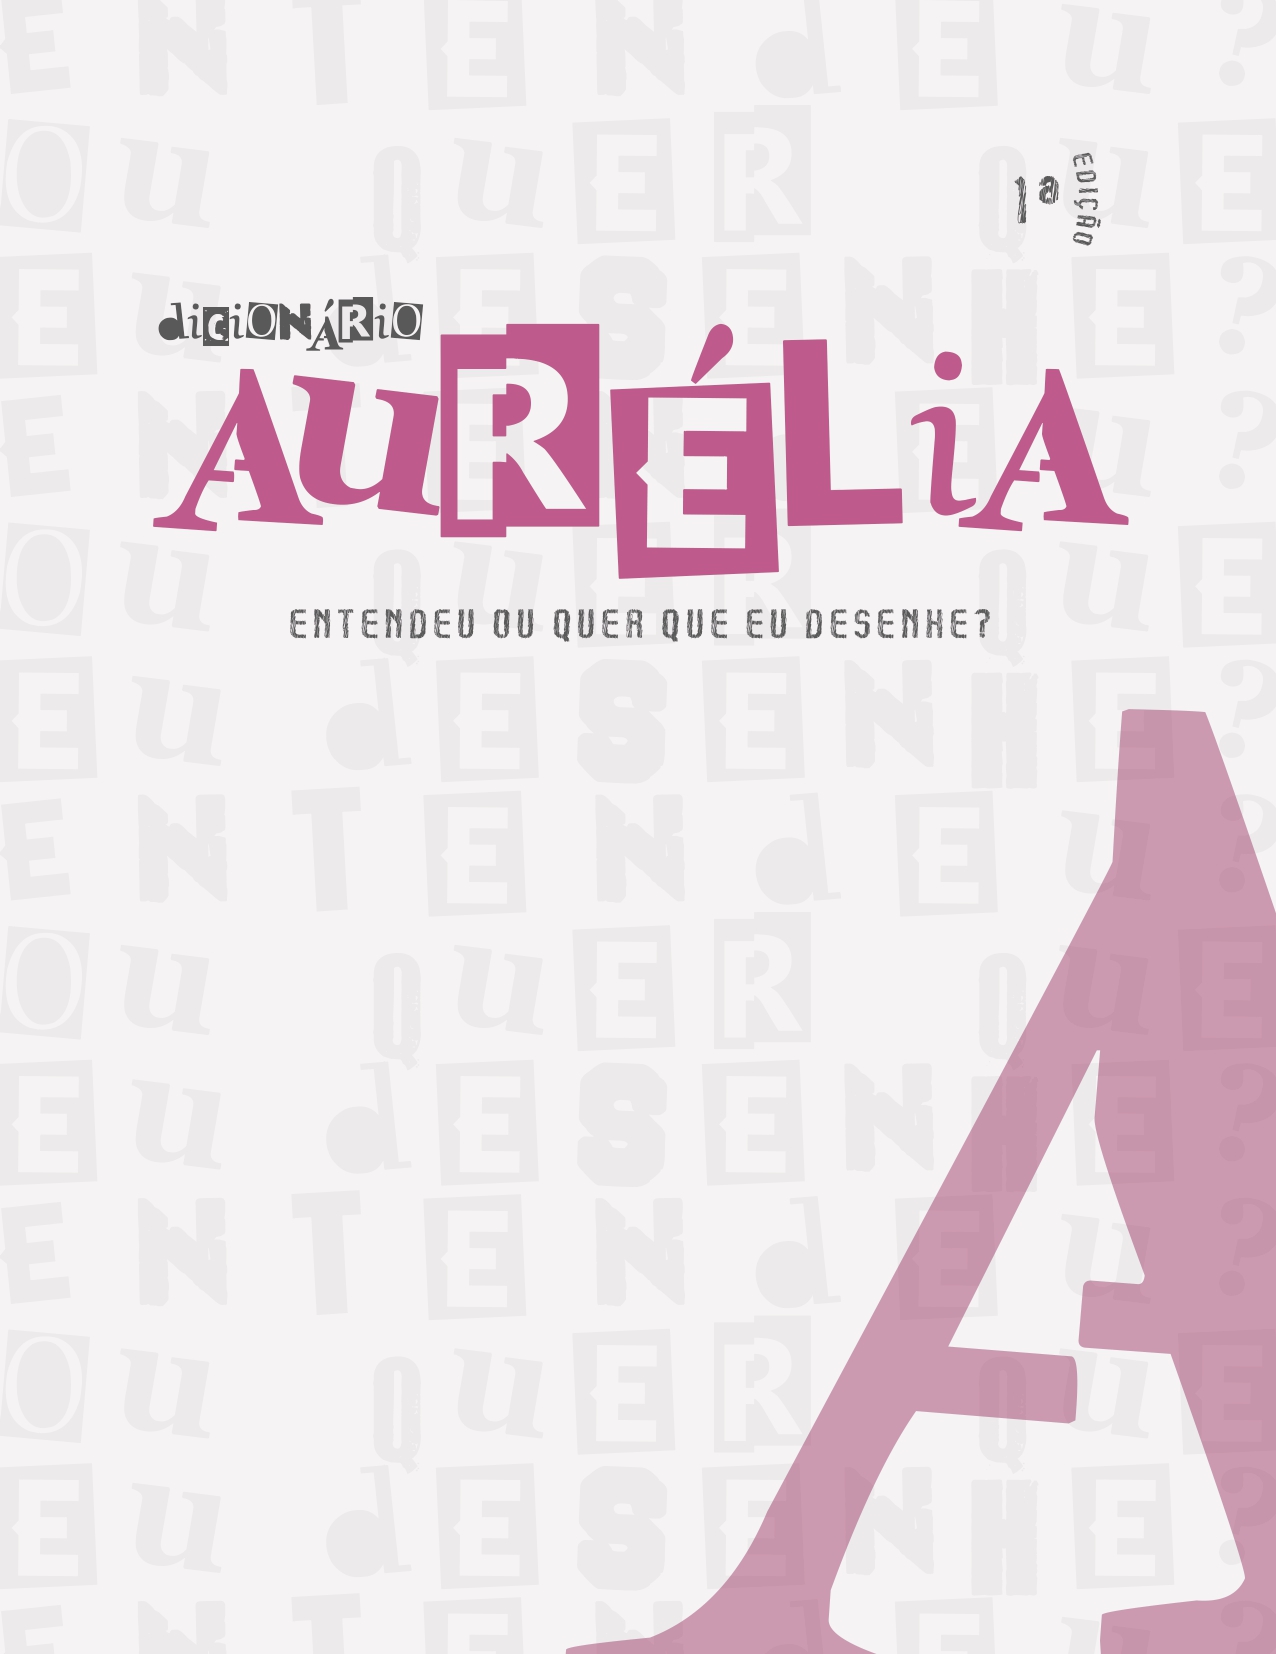 “Dicionário Aurélia”: universitários desenvolvem guia para combater assédio contra mulheres